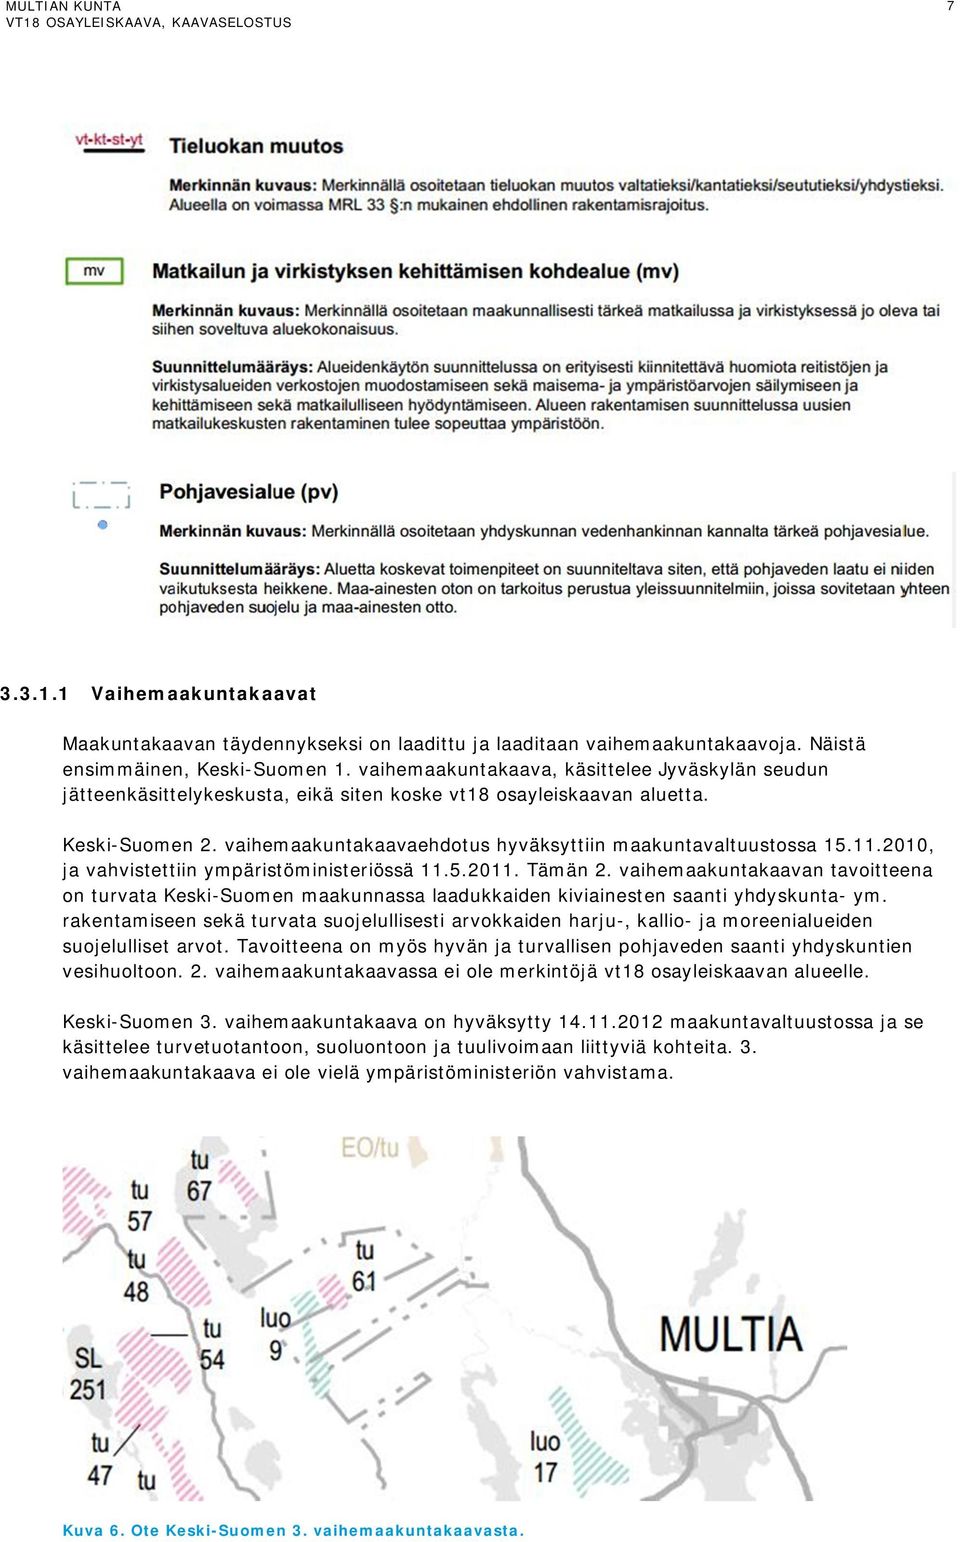 11.2010, ja vahvistettiin ympäristöministeriössä 11.5.2011. Tämän 2. vaihemaakuntakaavan tavoitteena on turvata Keski-Suomen maakunnassa laadukkaiden kiviainesten saanti yhdyskunta- ym.